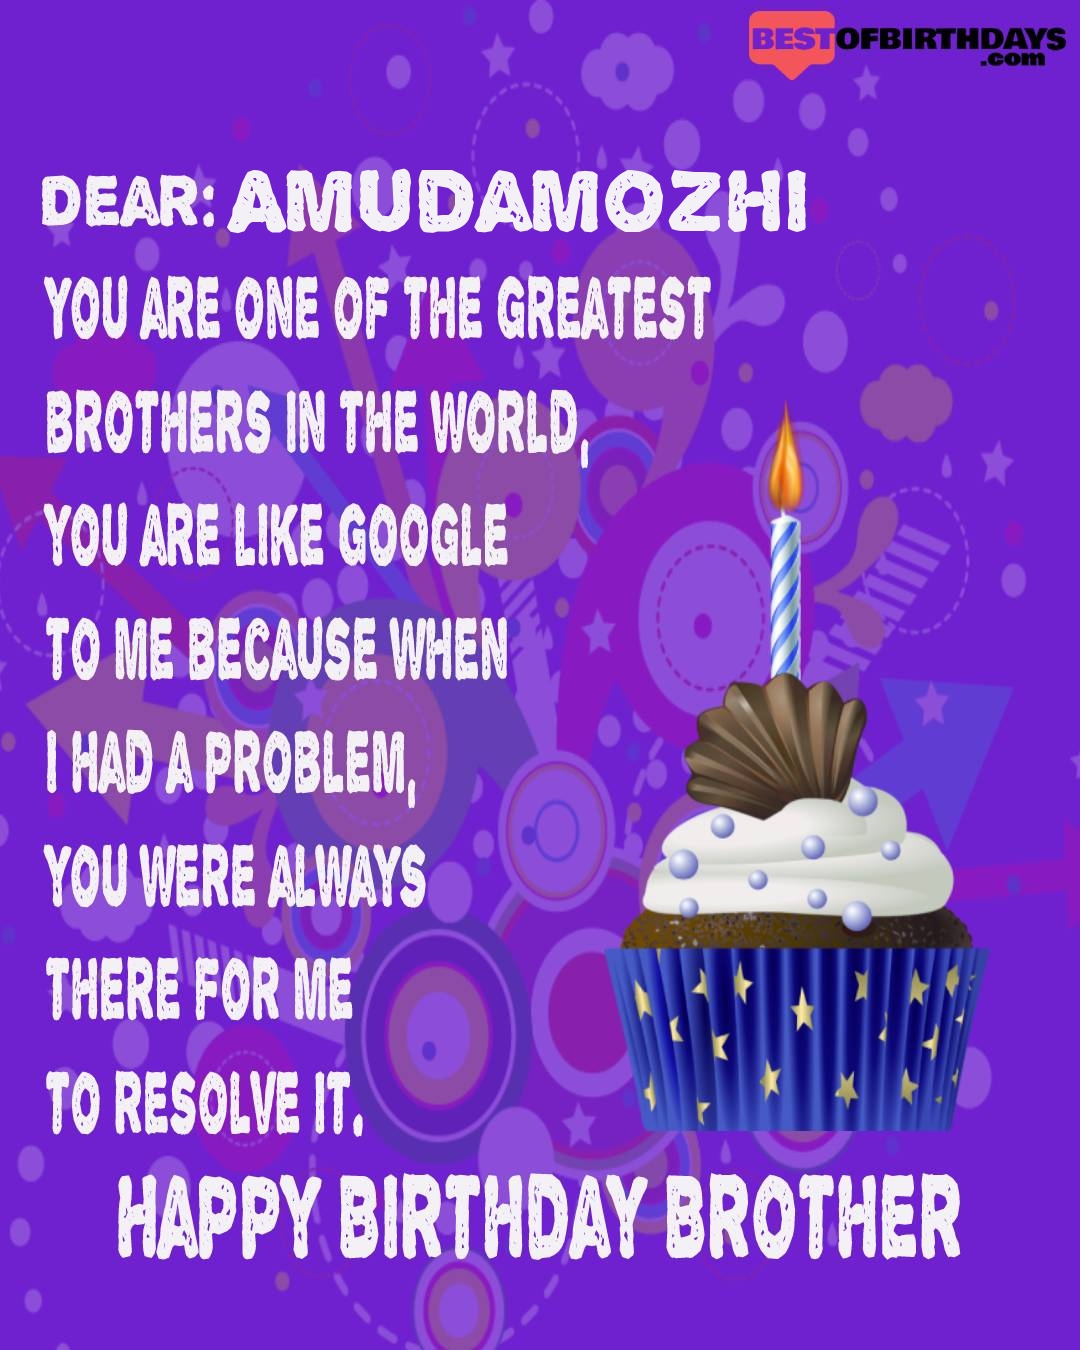 Happy birthday amudamozhi bhai brother bro